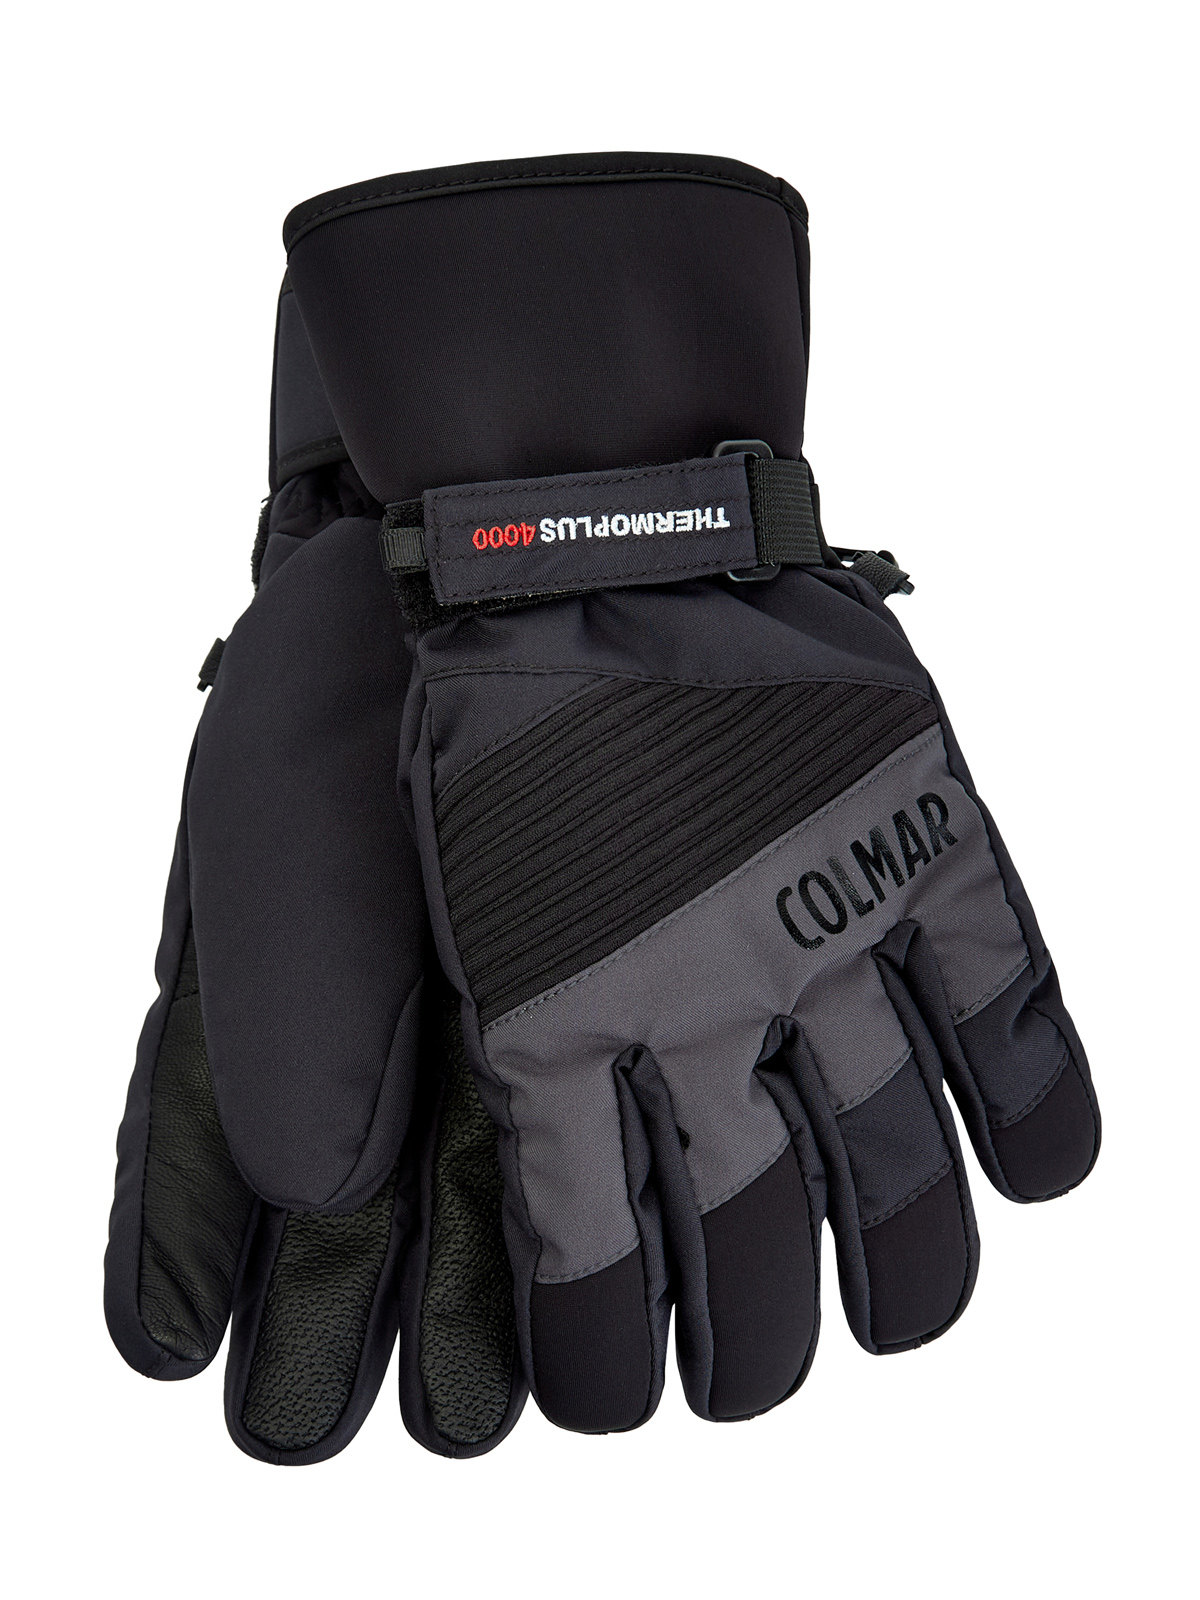 Утепленные перчатки с термозащитой thermo-plus и кожаными вставками COLMAR, цвет черный, размер XL;M;L